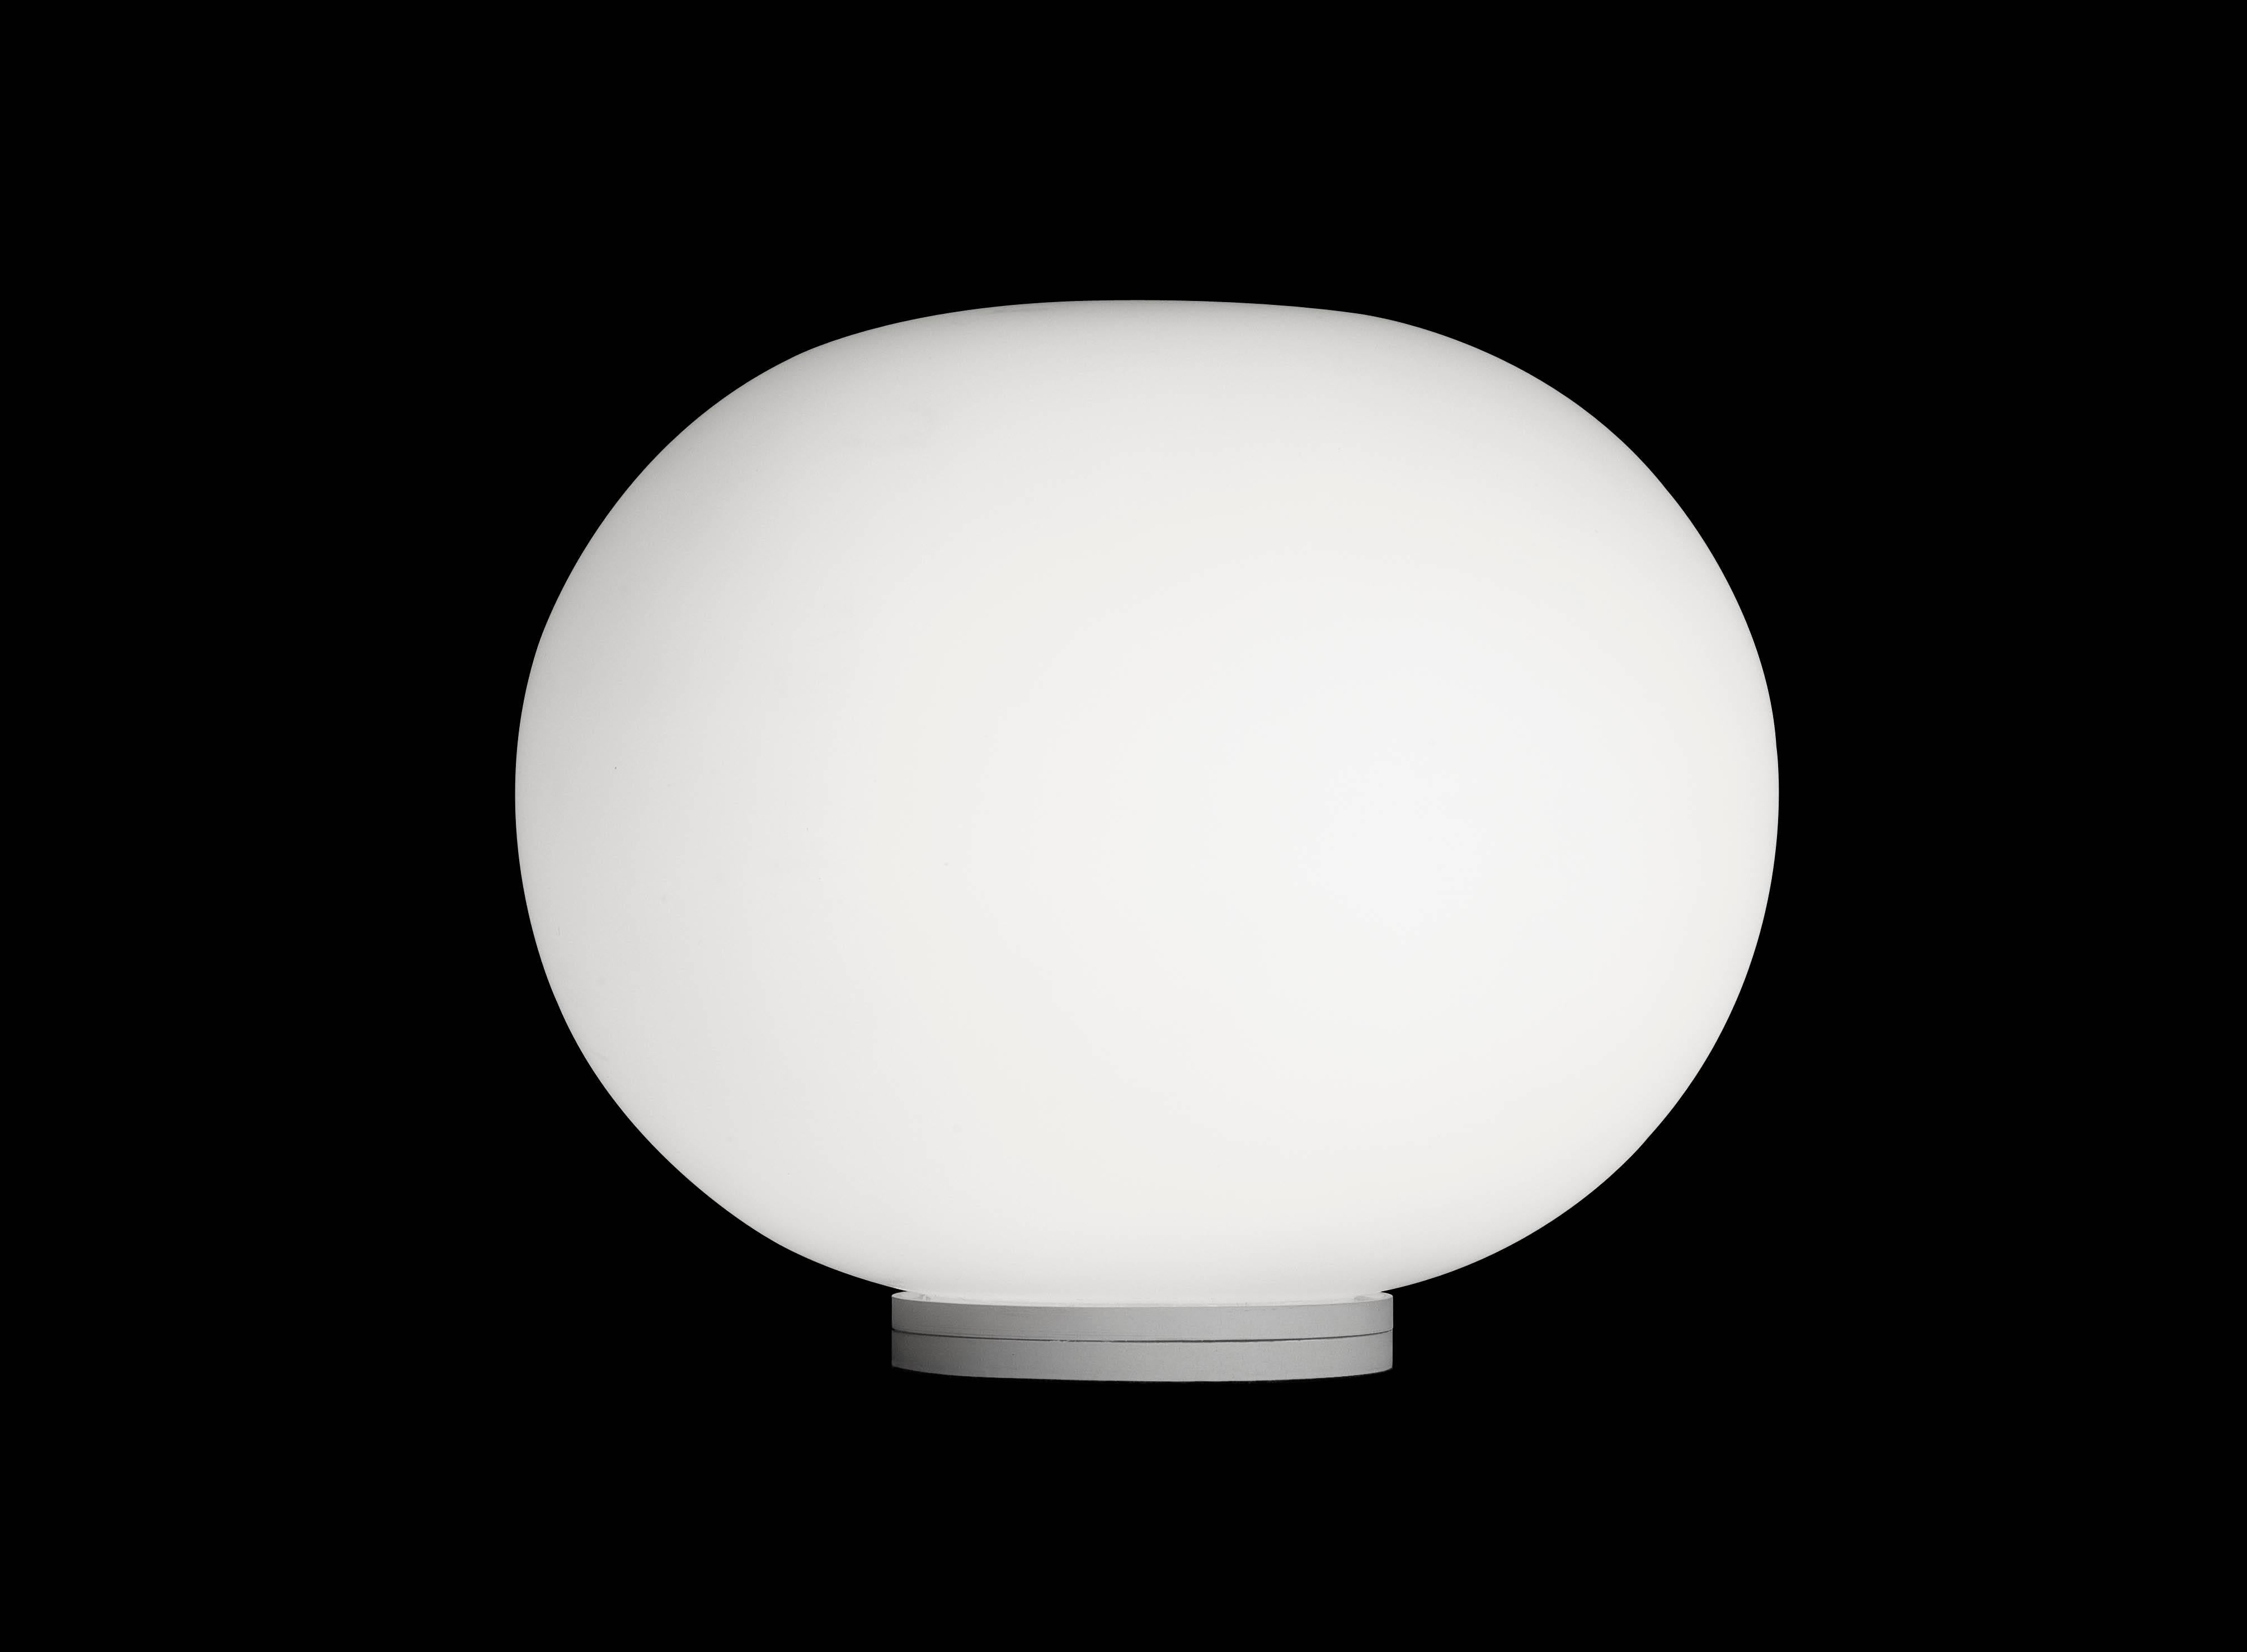 FLOS Glo-Ball Basic Zero Lampe de table par Jasper Morrison
Faisant partie de la populaire série Glo Ball, la Glo Ball Basic a été créée en 1998 par l'artiste Jasper Morrison pour évoquer le calme radieux de la pleine lune. Cette lampe de table